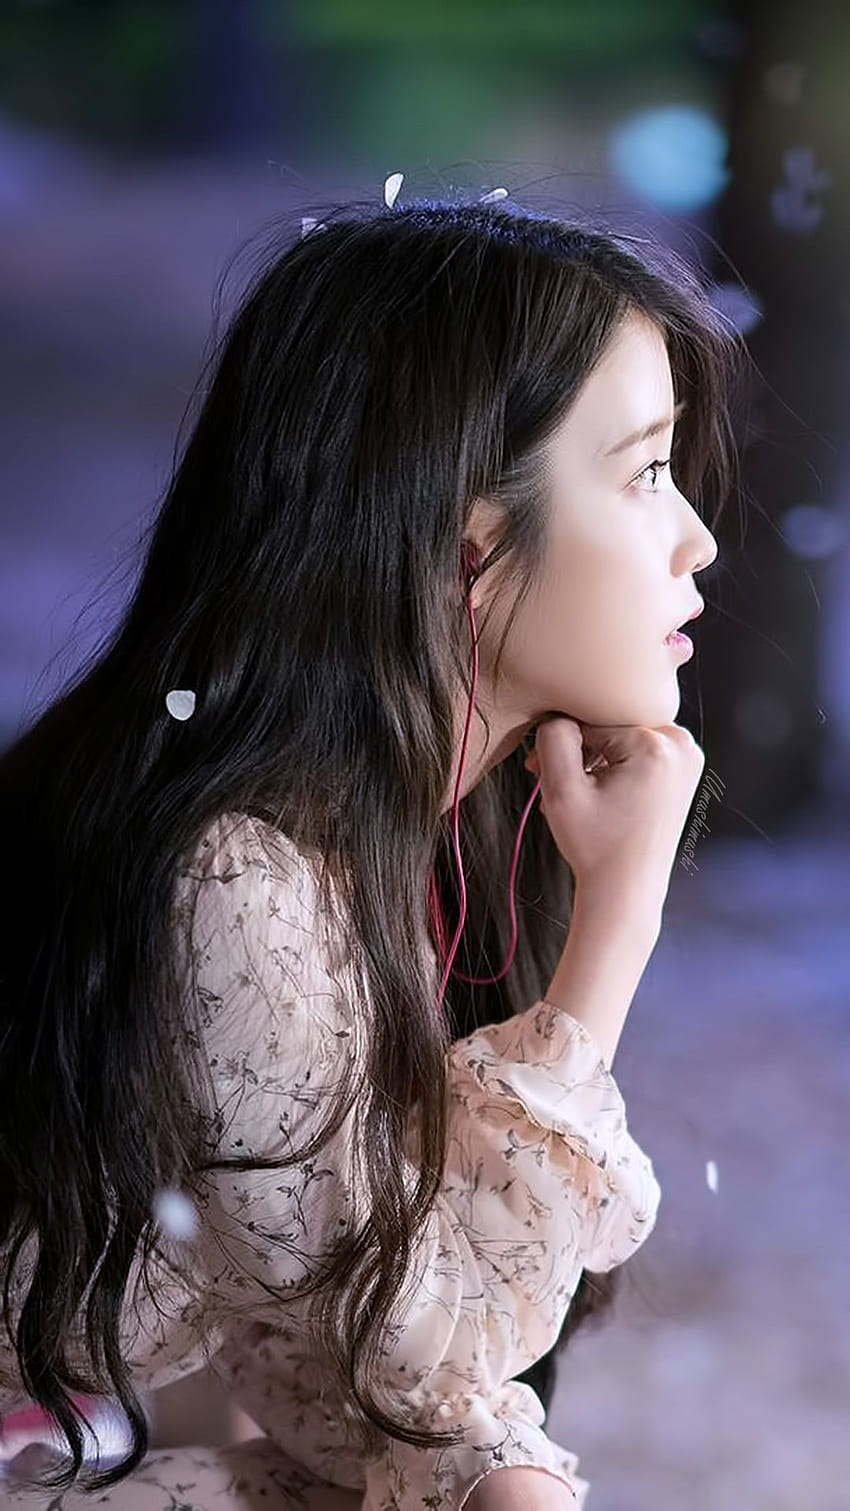 Iu kpop girl: Hãy cùng đắm mình trong vẻ đẹp tuyệt vời của nữ ca sĩ Iu - một trong những nhân vật nổi tiếng của làng giải trí Hàn Quốc. Xem những hình ảnh đẹp nhất của Iu trên trang của chúng tôi. Iu kpop girl sẽ thật sự khiến bạn ngất ngây và say mê.